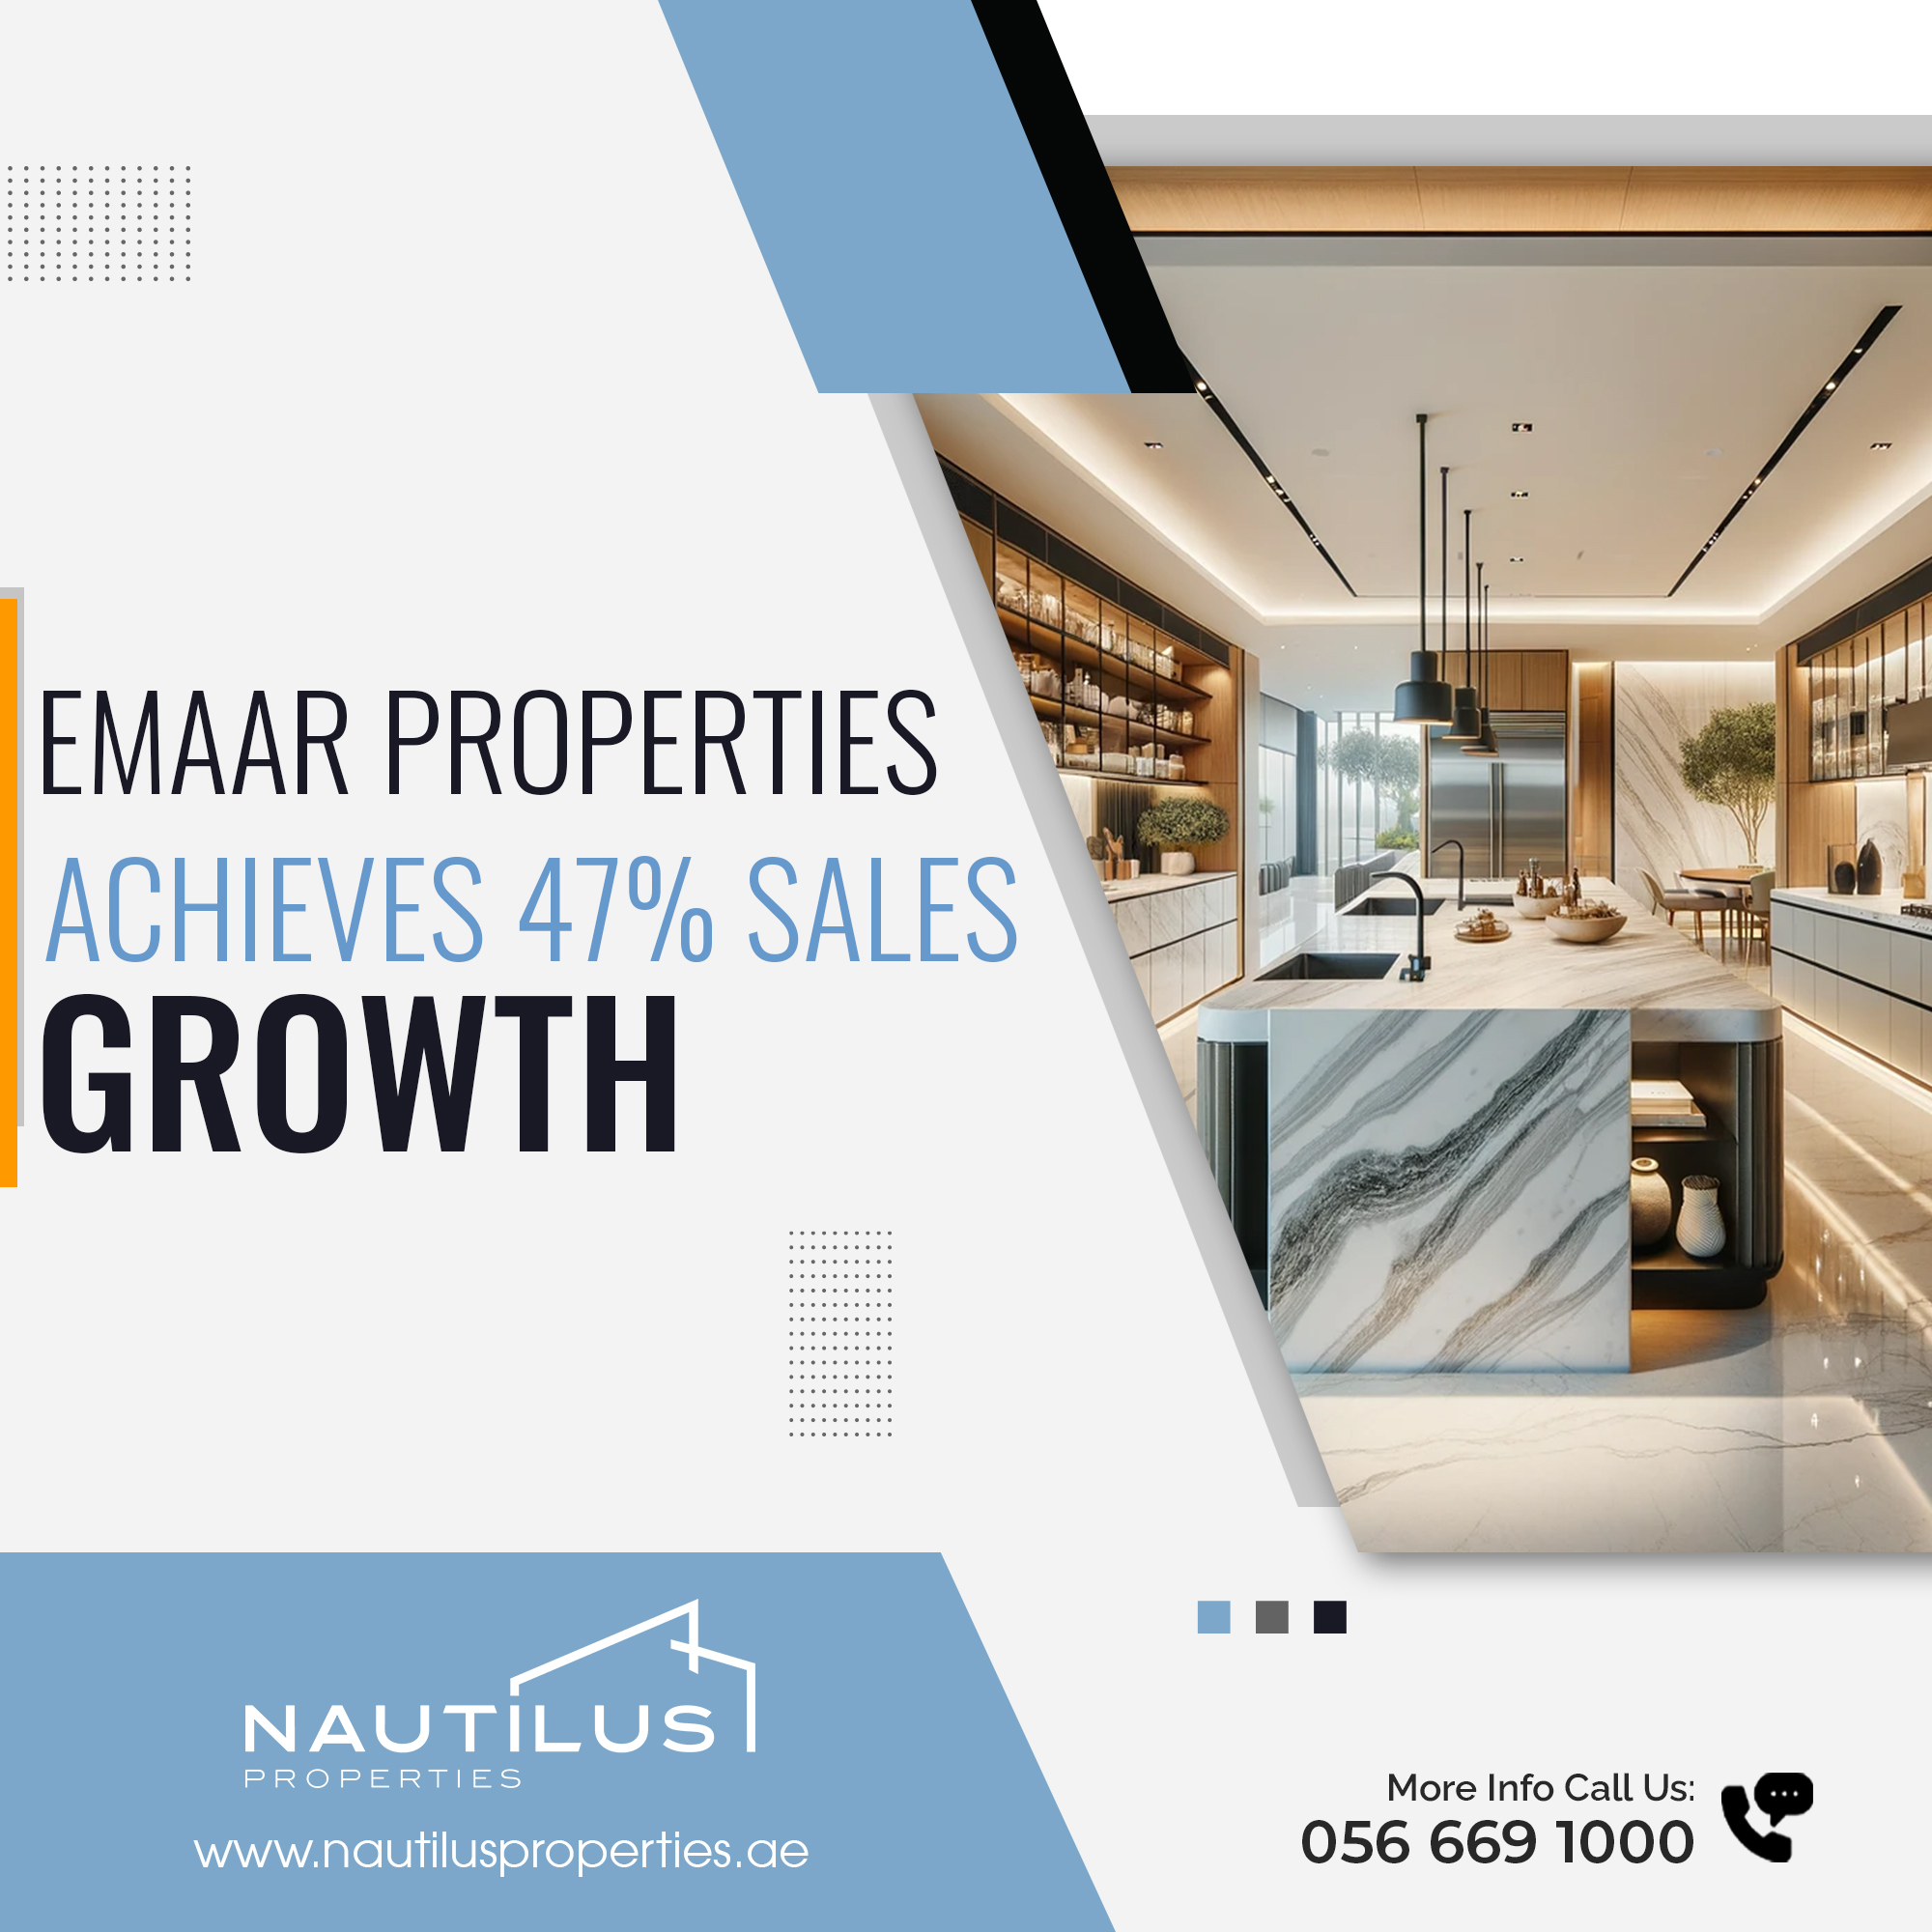 Emaar Properties Achieves 47% Sales Growth - Nautilus Properties